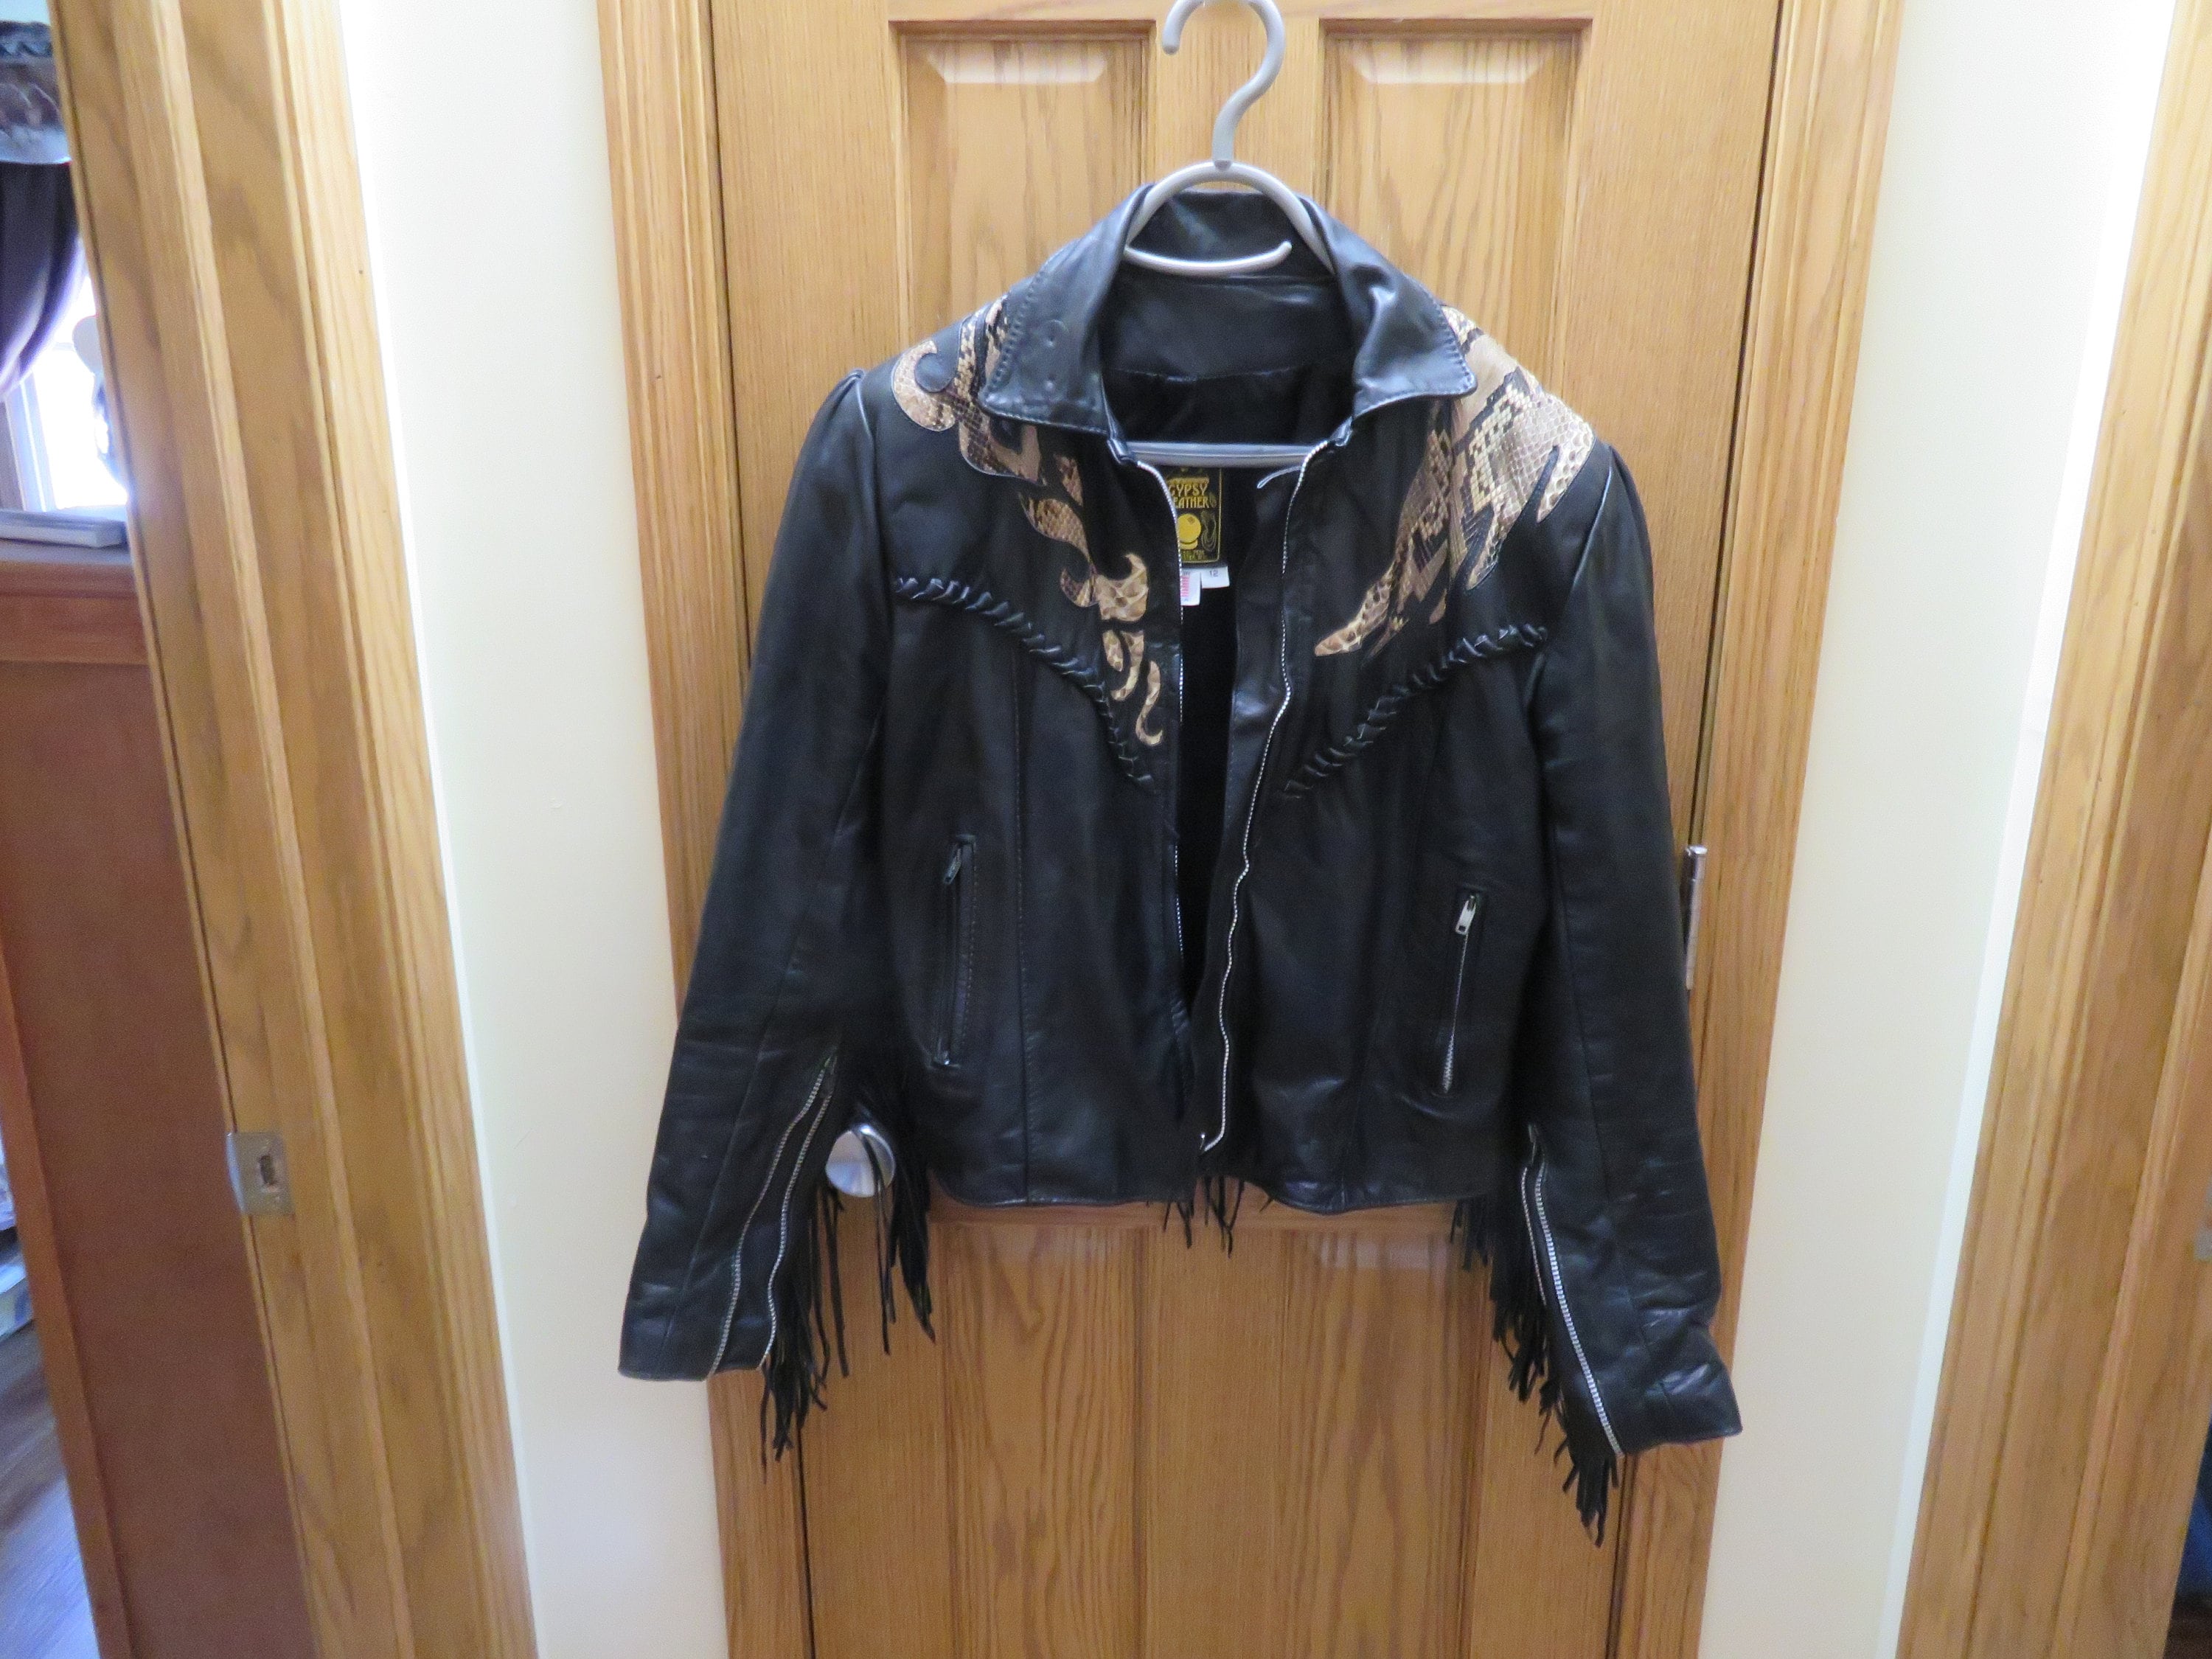 Gypsy Leather Jacket - Etsy